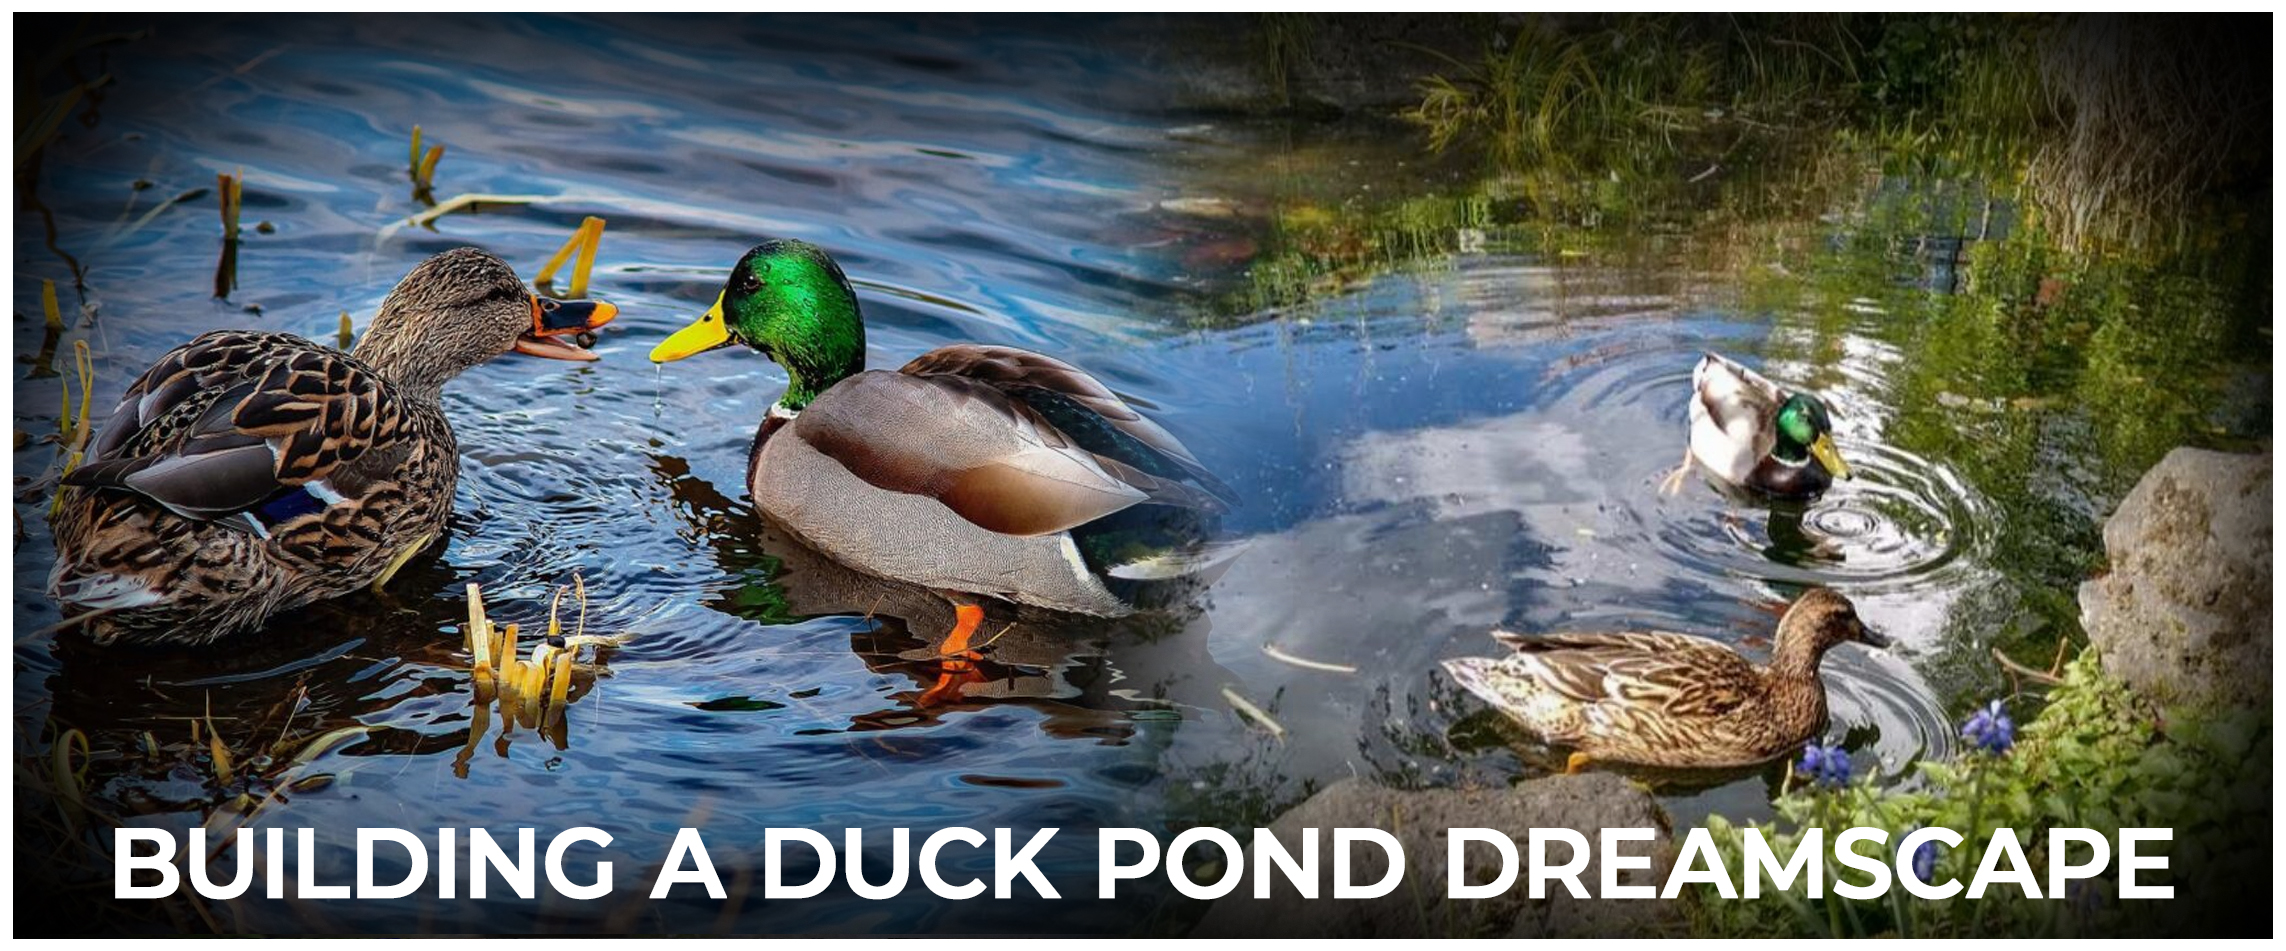 Building a Duck Pond Dreamscape